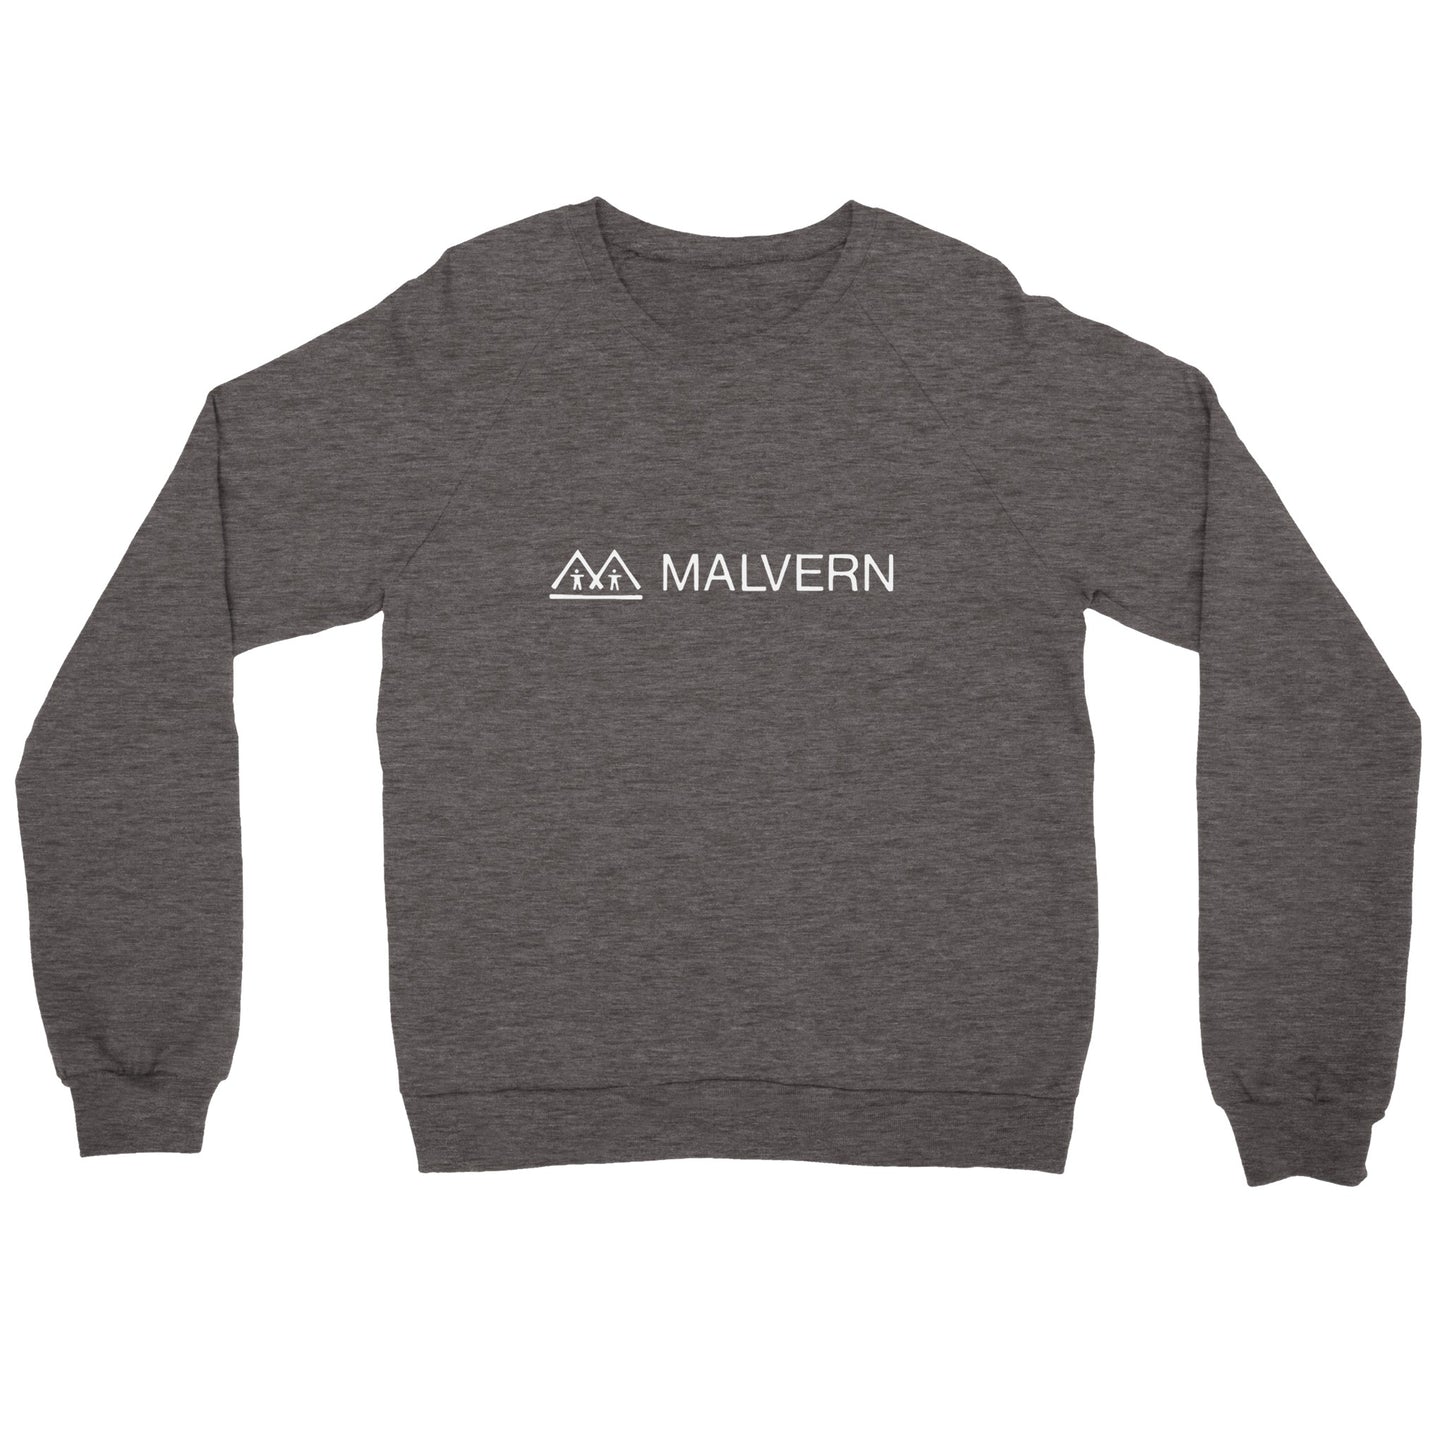 "Malvern Original" Premium Unisex Crewneck Sweatshirt